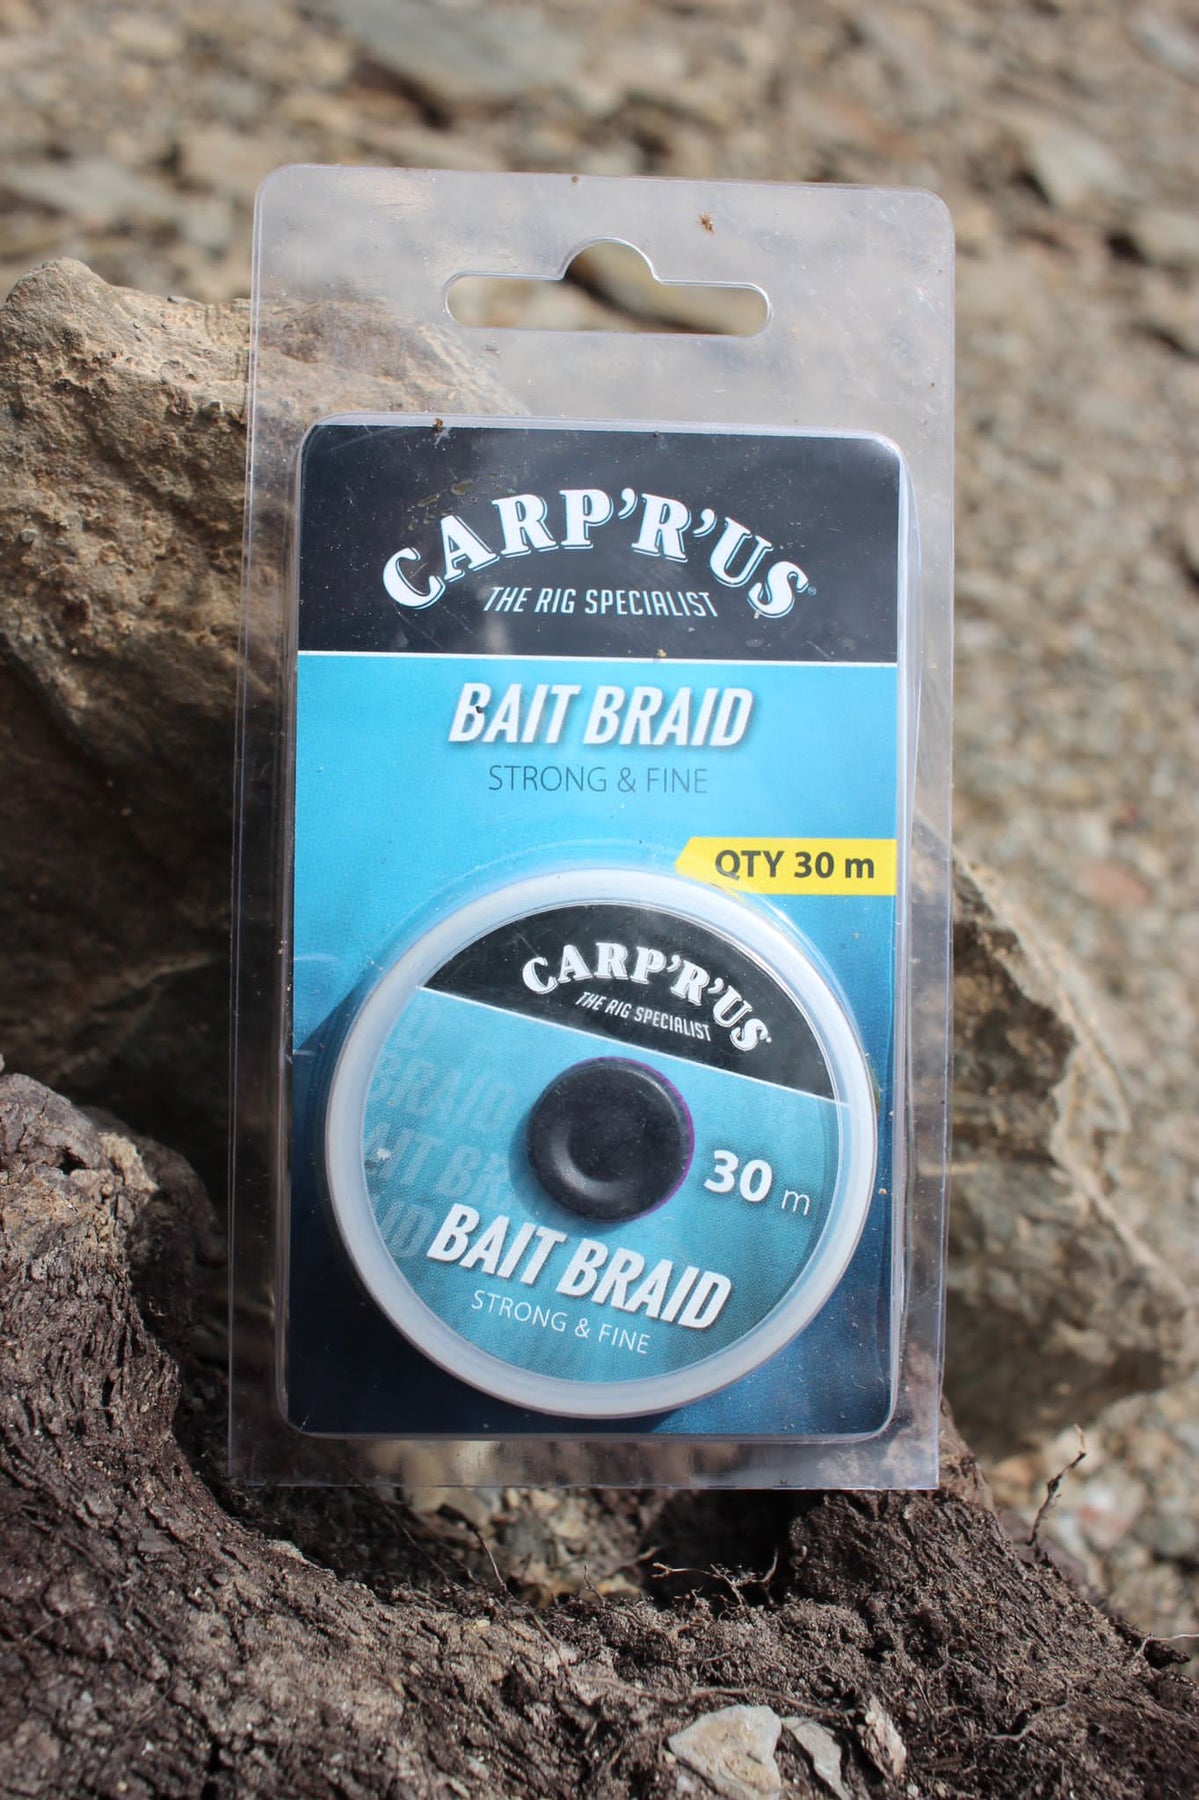 Carp'r'us - Bait Braid – Imperial Fishing GmbH